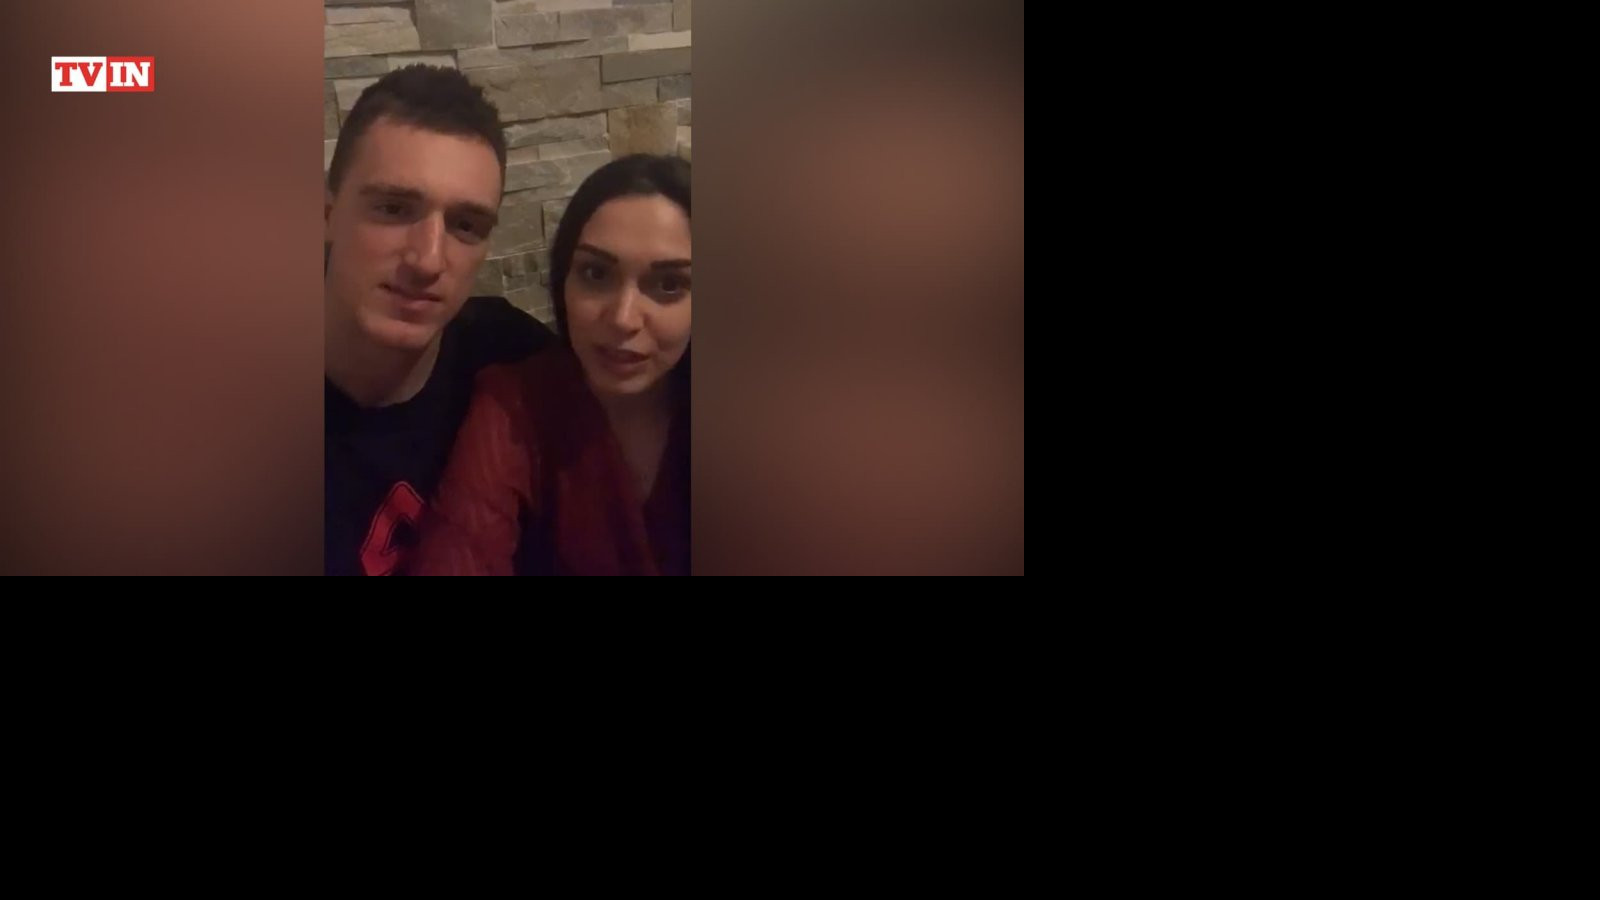 IZOLACIJA IM NE PADA TEŠKO! Ivana Maksimović i Danilo Anđušić uživaju kad su zajedno (Video)